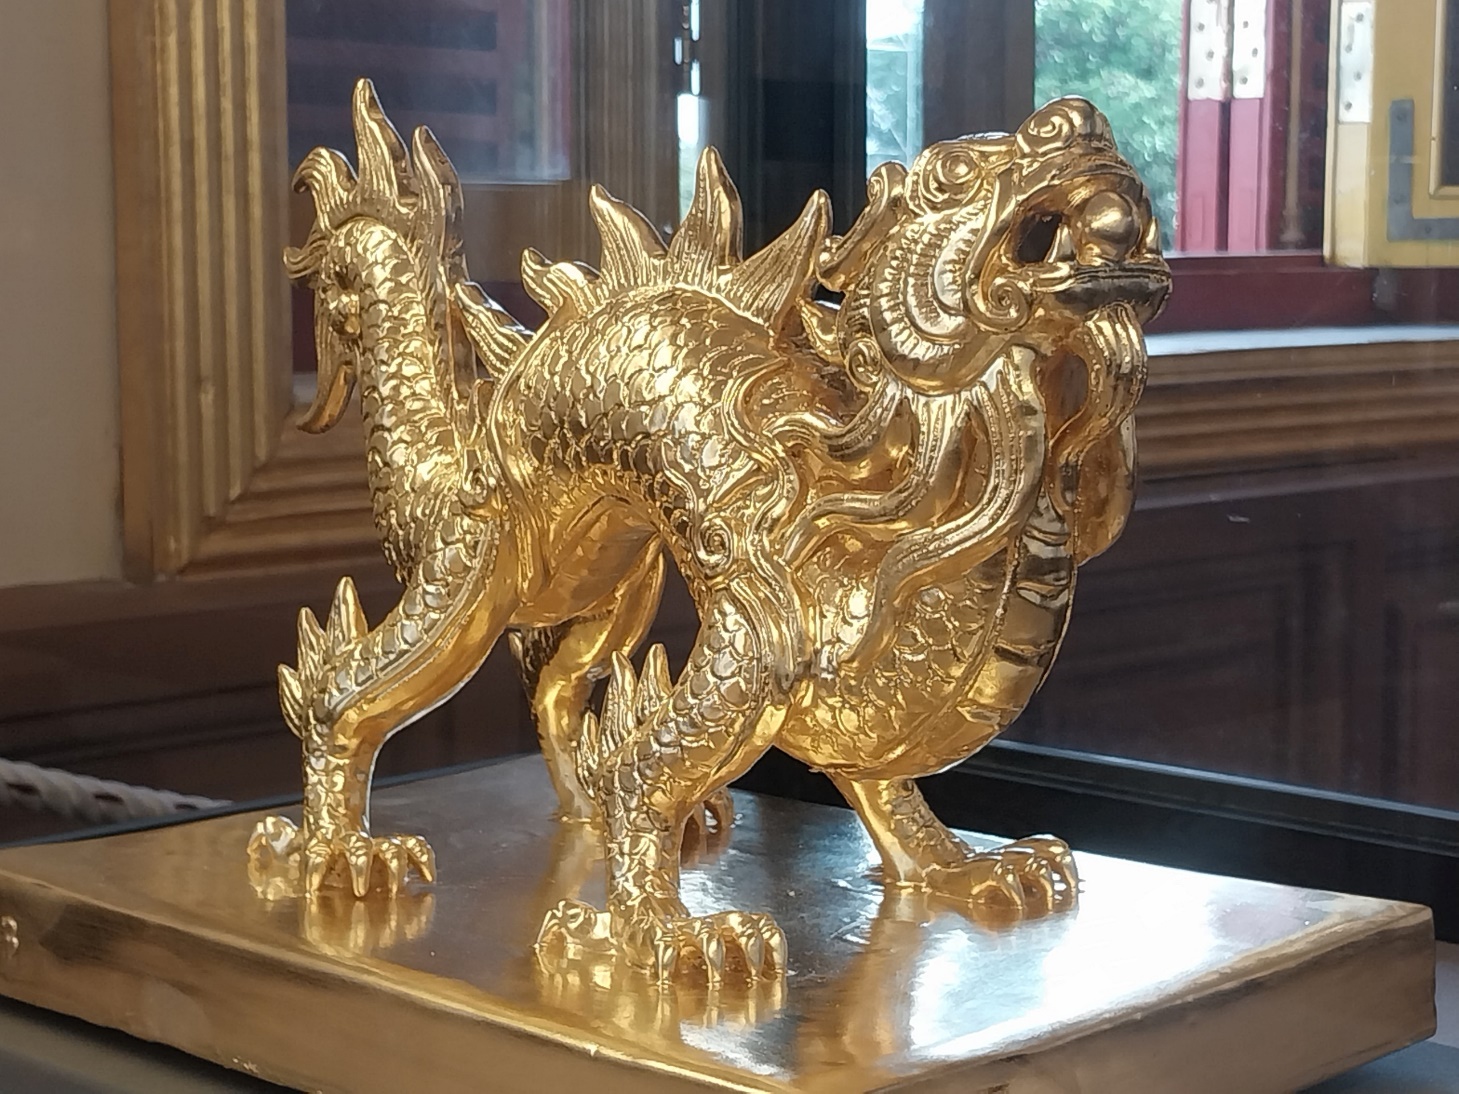 Chiêm ngưỡng "Biểu tượng rồng" - Tuyệt tác nghệ thuật gốm sứ Việt Nam - 1